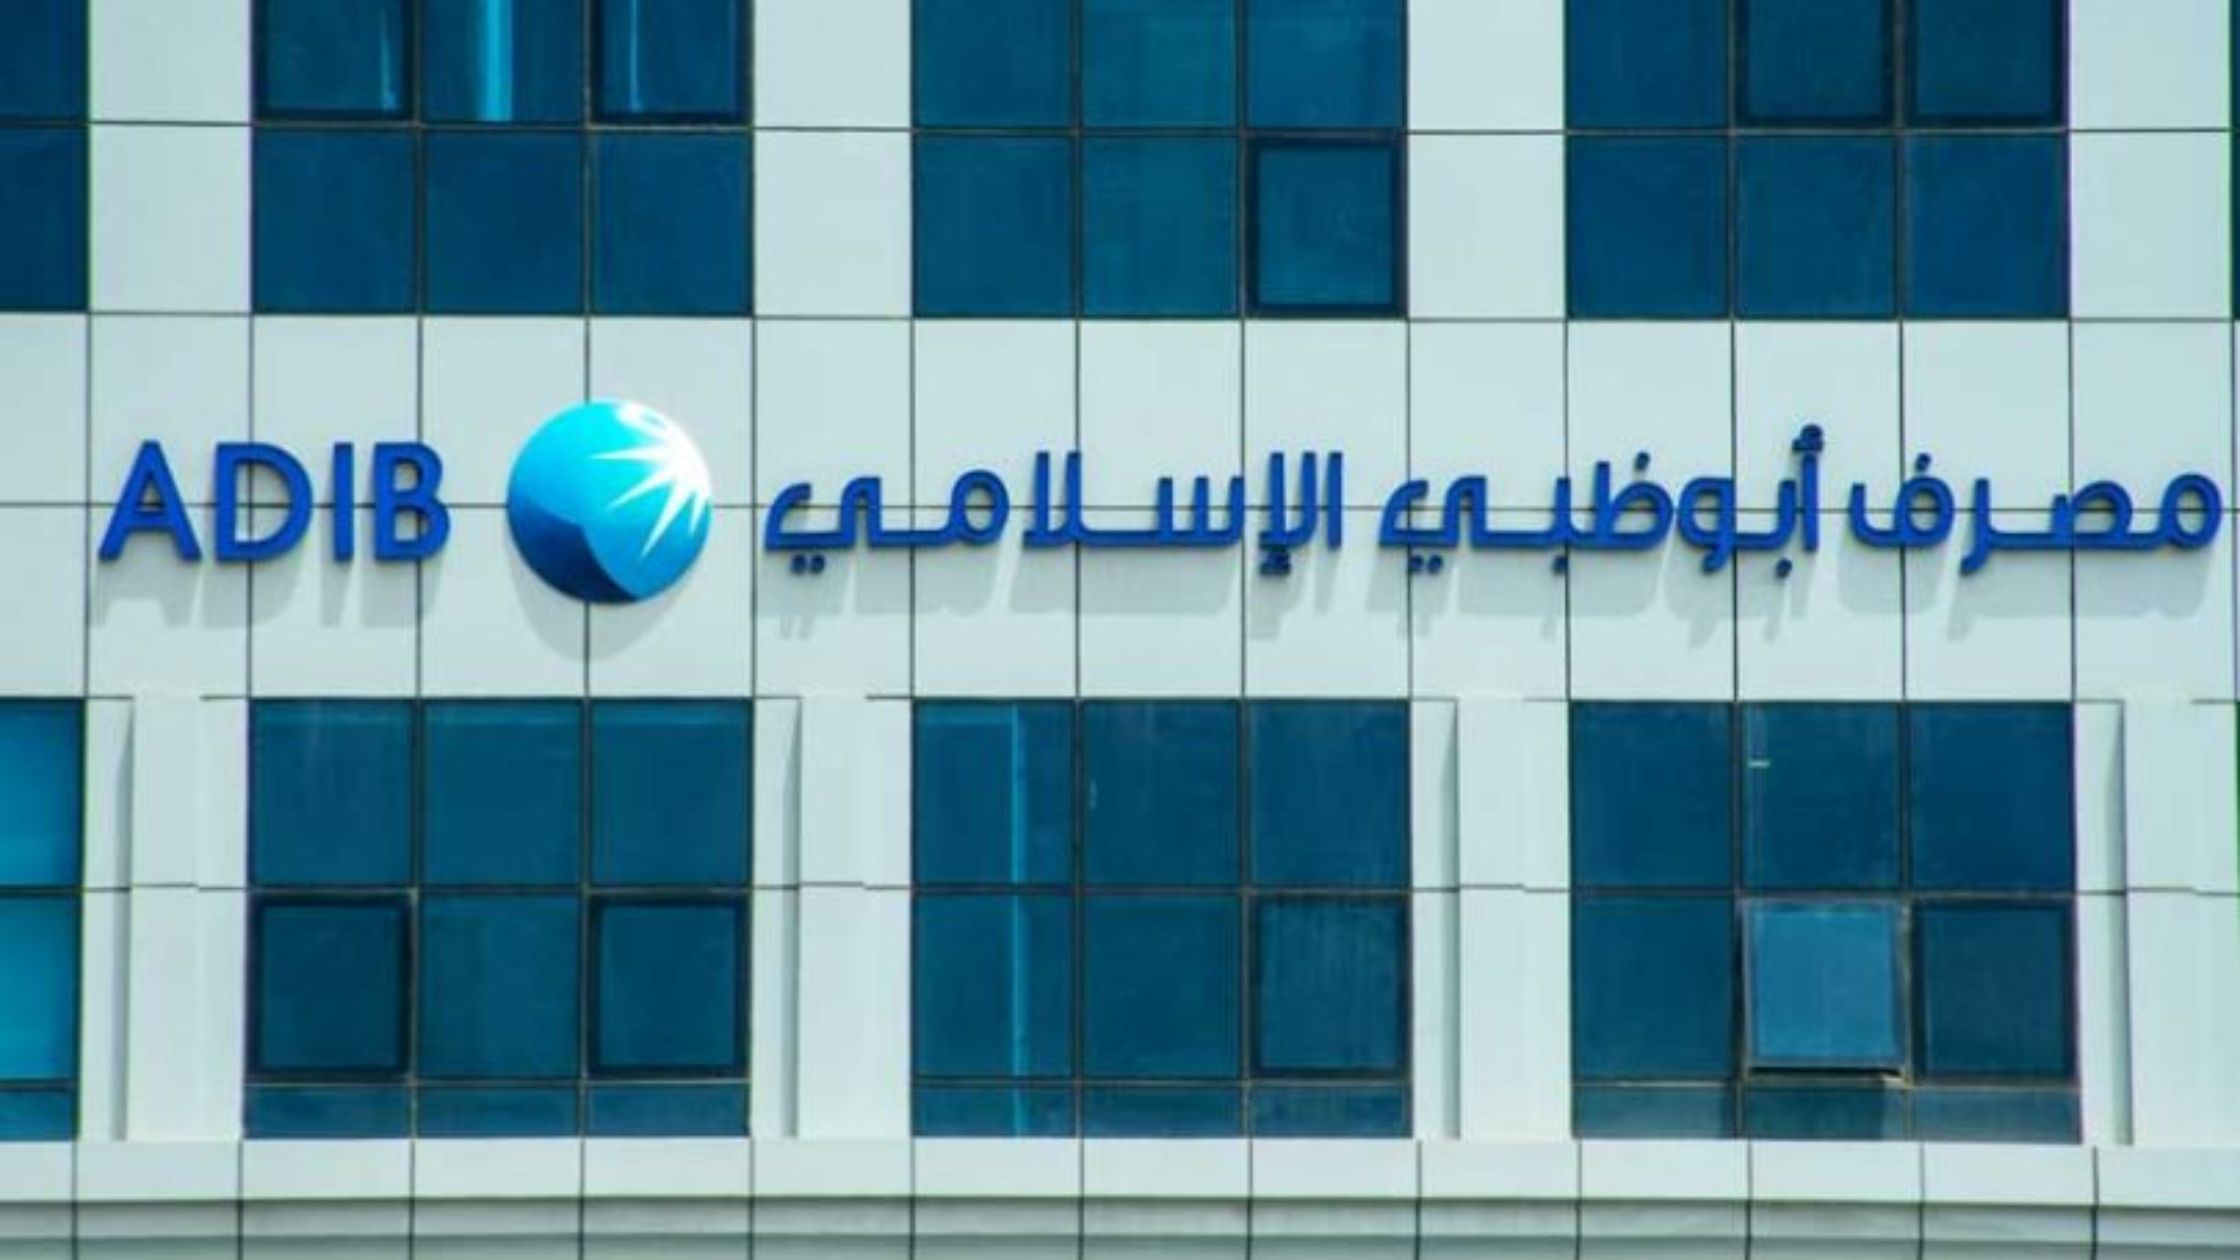 अबू धाबी इस्लामिक बैंक अब 28 जॉब रोल्स के लिए हायरिंग कर रहा है